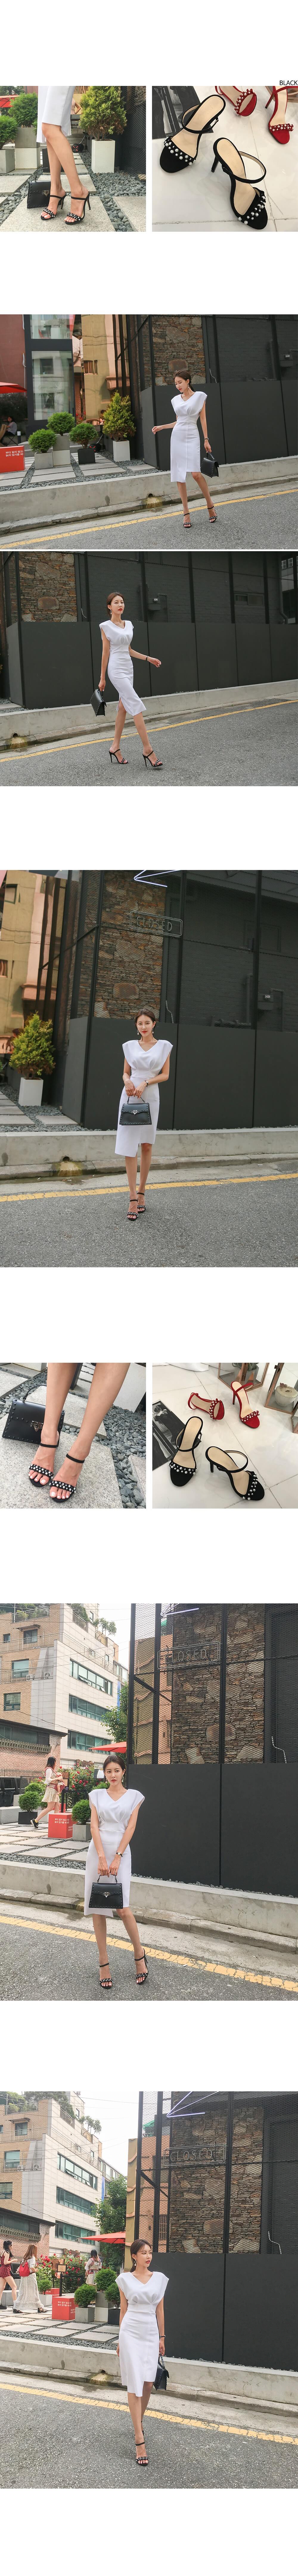 韓國平價服飾 麂皮珍珠帶涼跟鞋